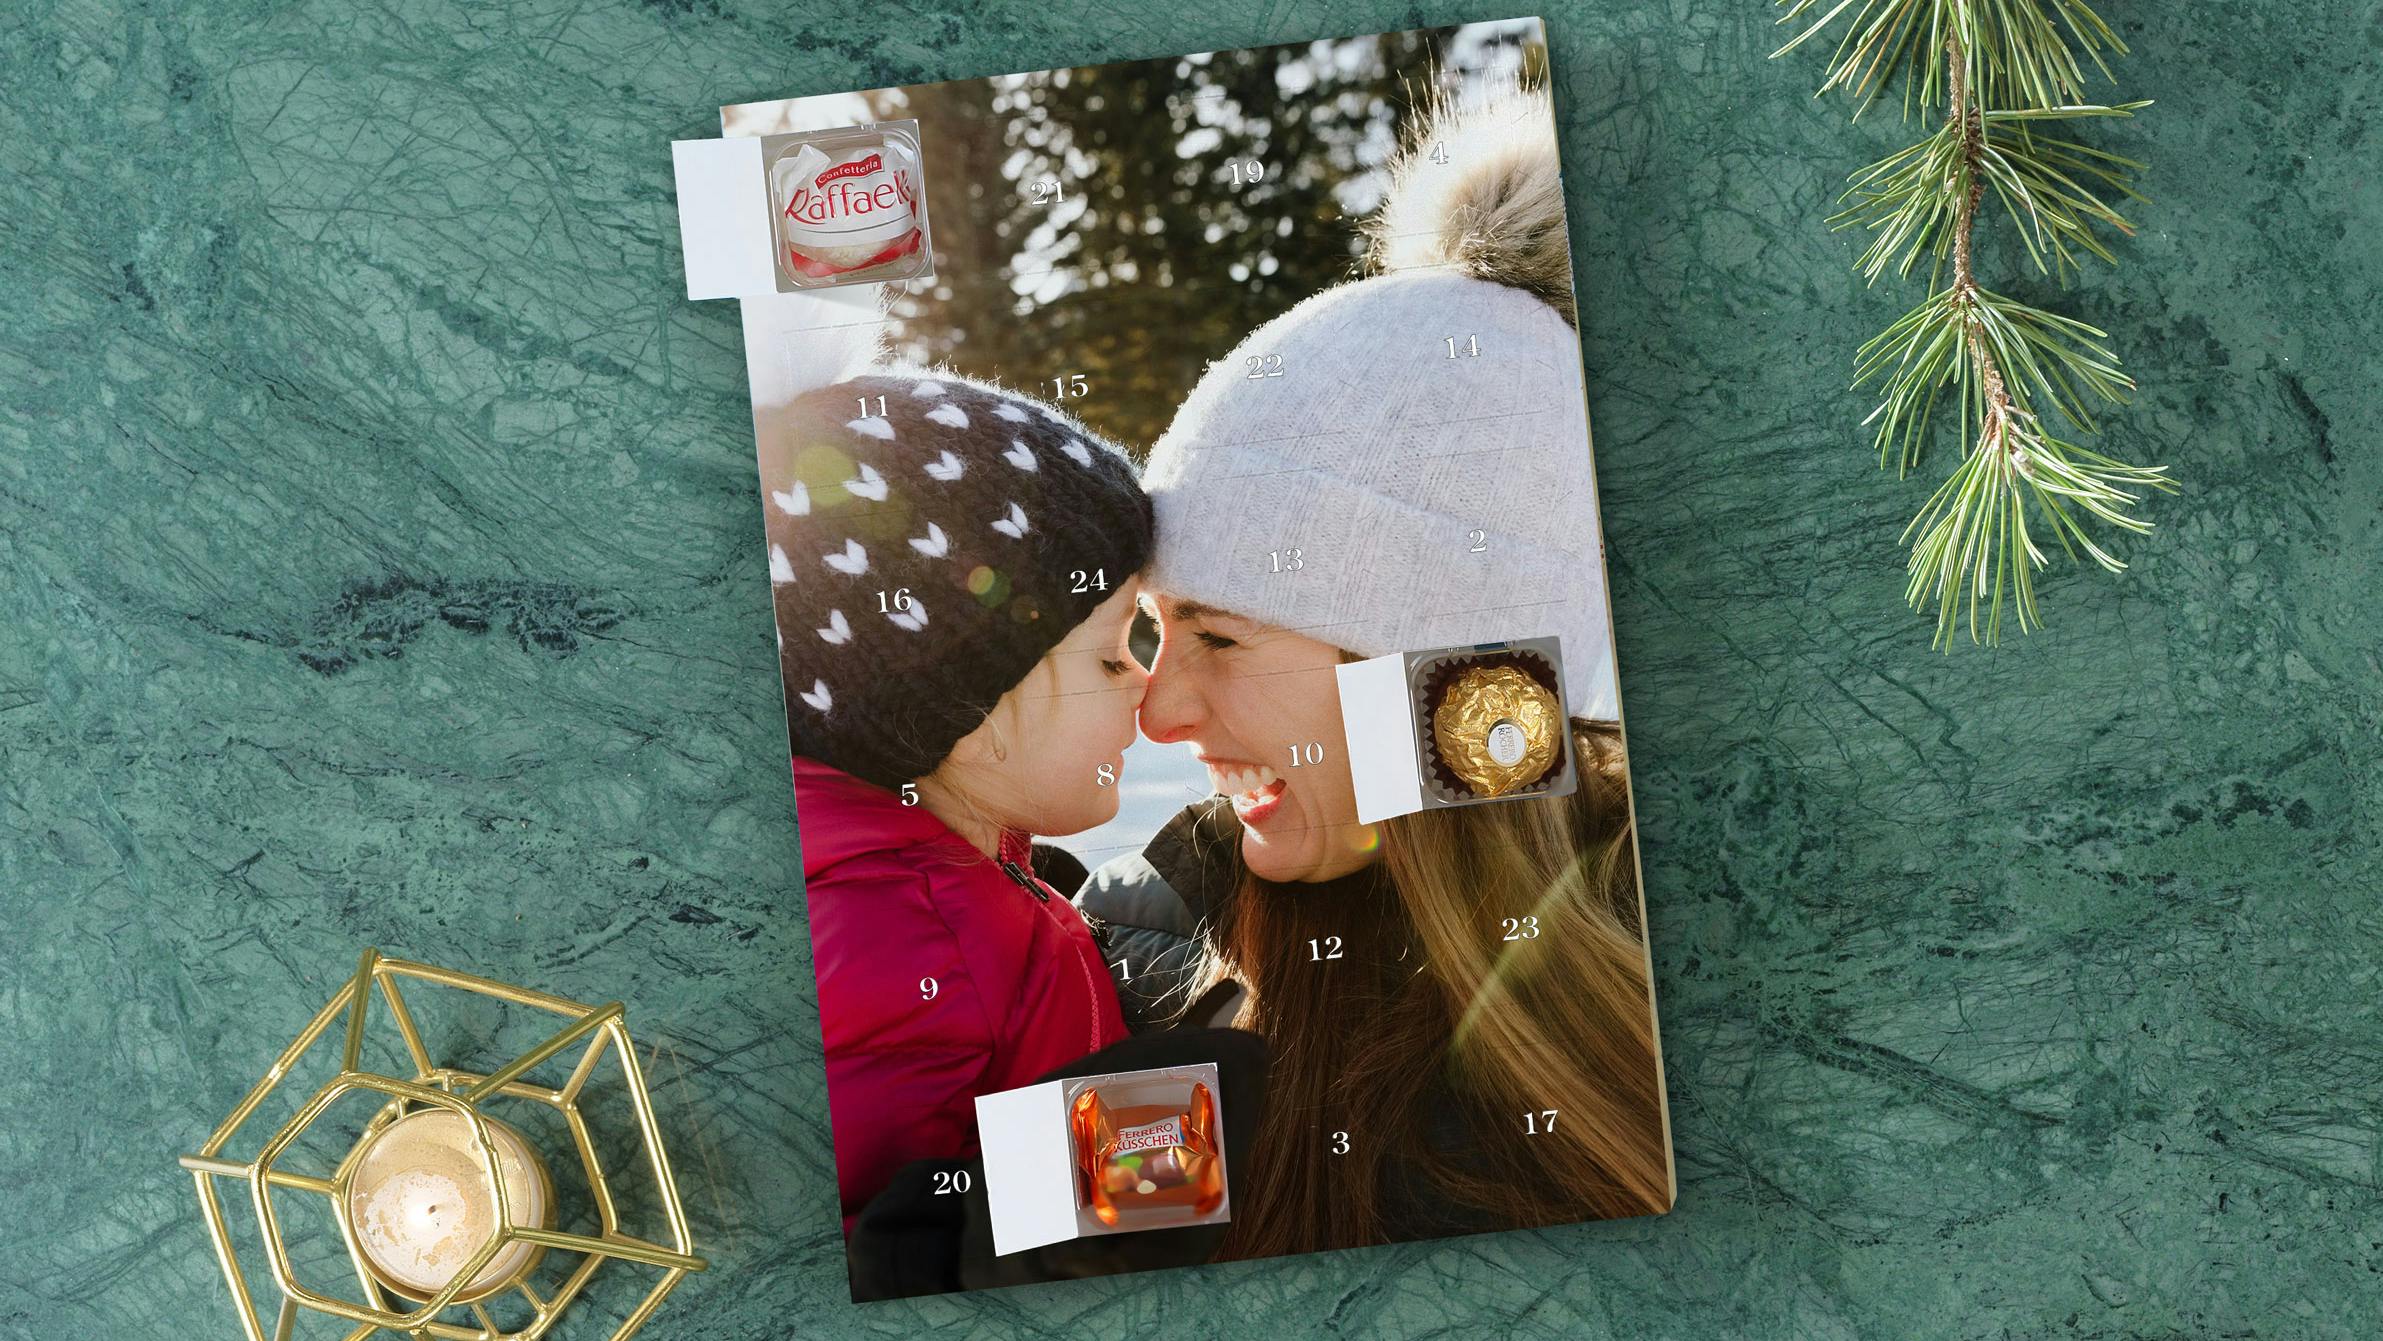 Calendarios de Adviento personalizados con bombones Ferrero Rocher con una imagen de una madre con su hija en la nieve